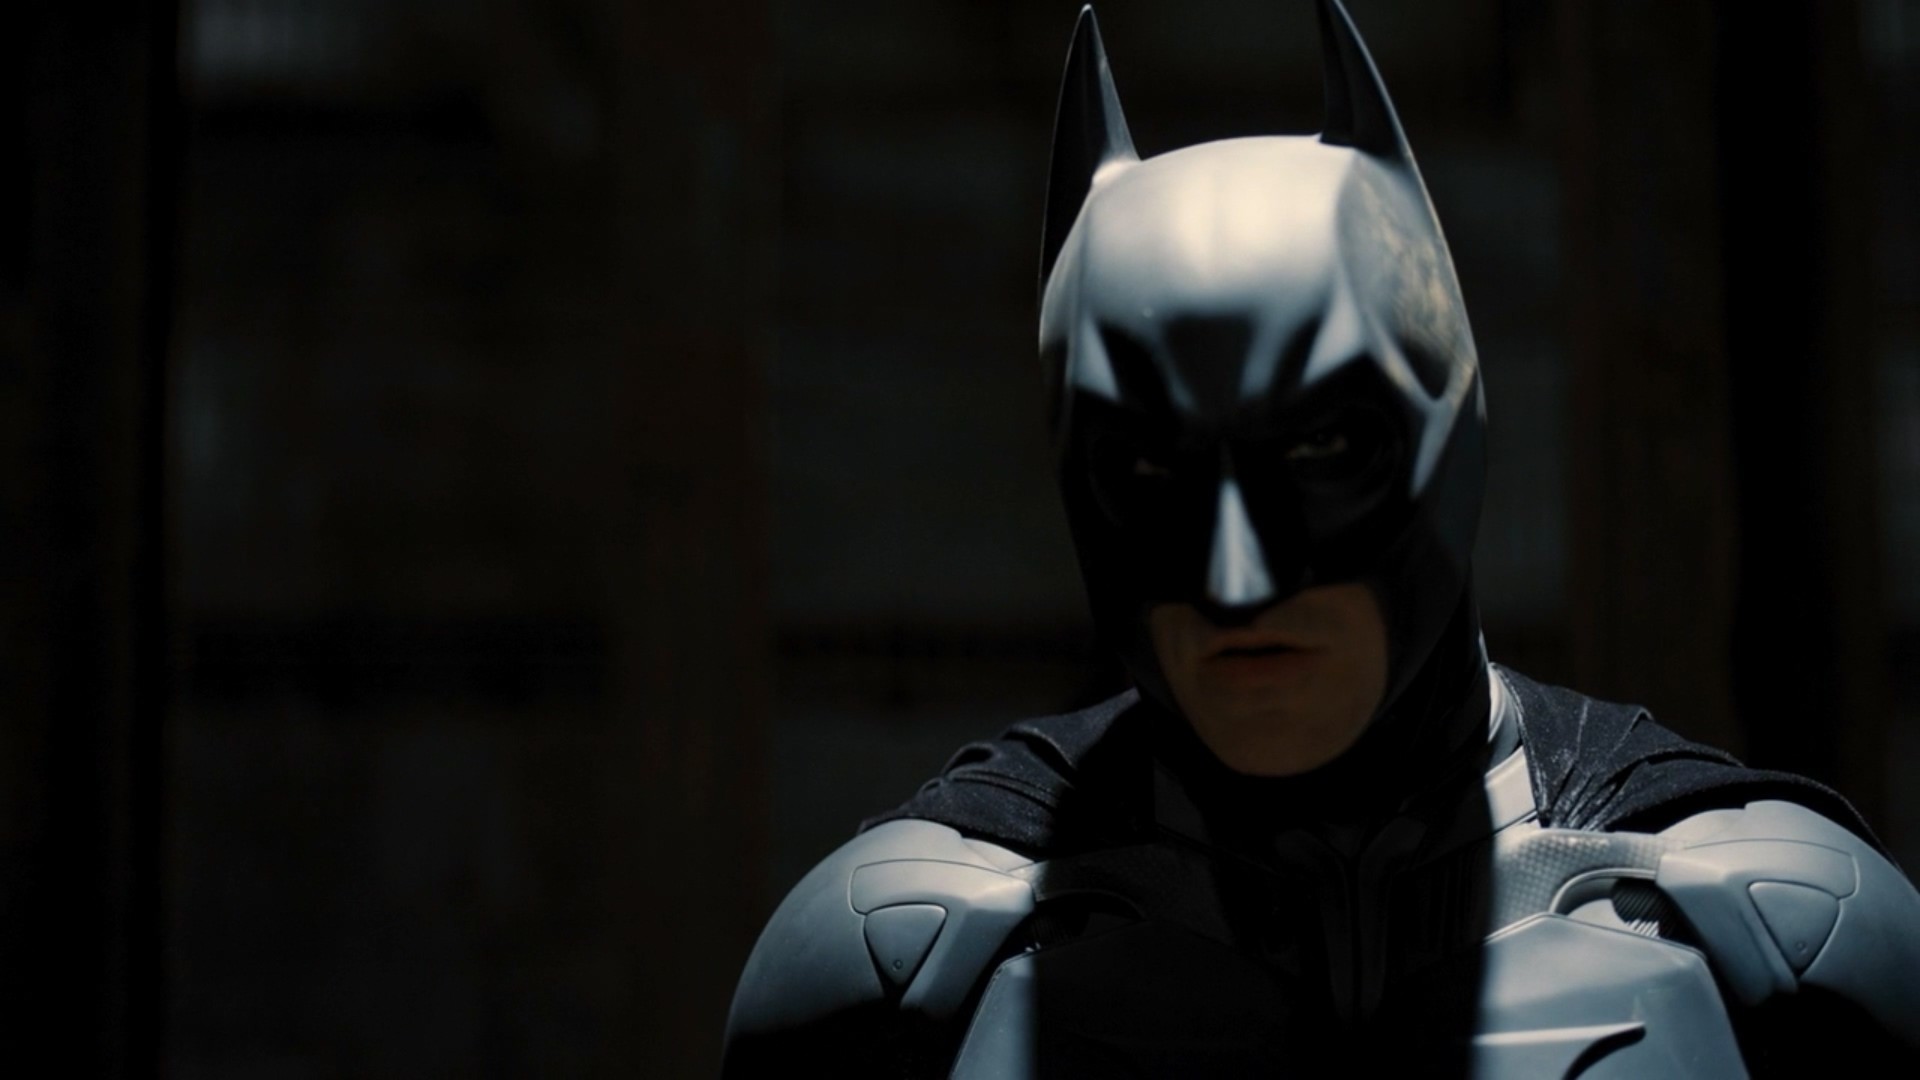 General 1920x1080 Batman The Dark Knight Rises 2012 (Year) movies Christian Bale film stills